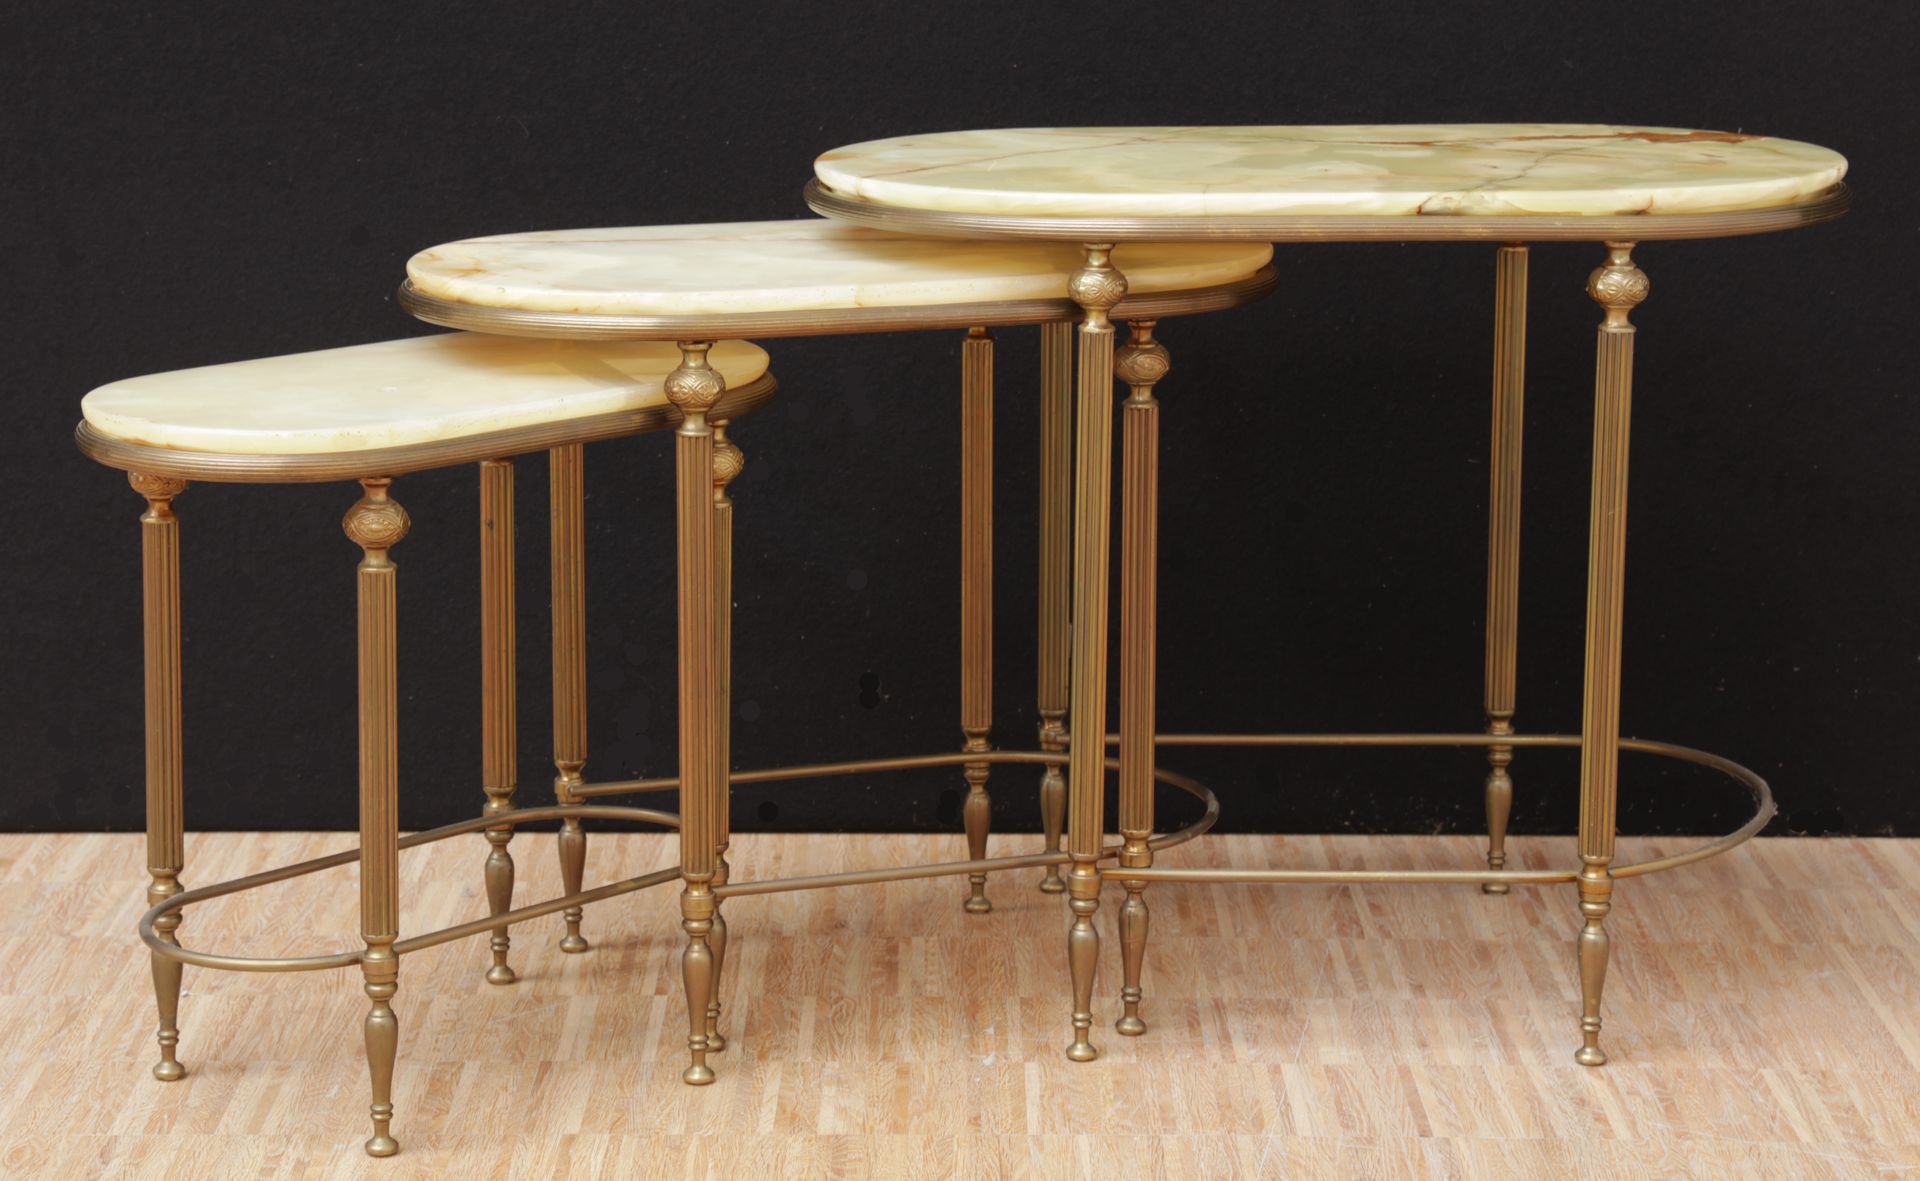 VARIA 3个铜制和大理石桌面的系列嵌套桌
Drie bijzettafeljtes met koperen onderstel en marmeren bl&hellip;